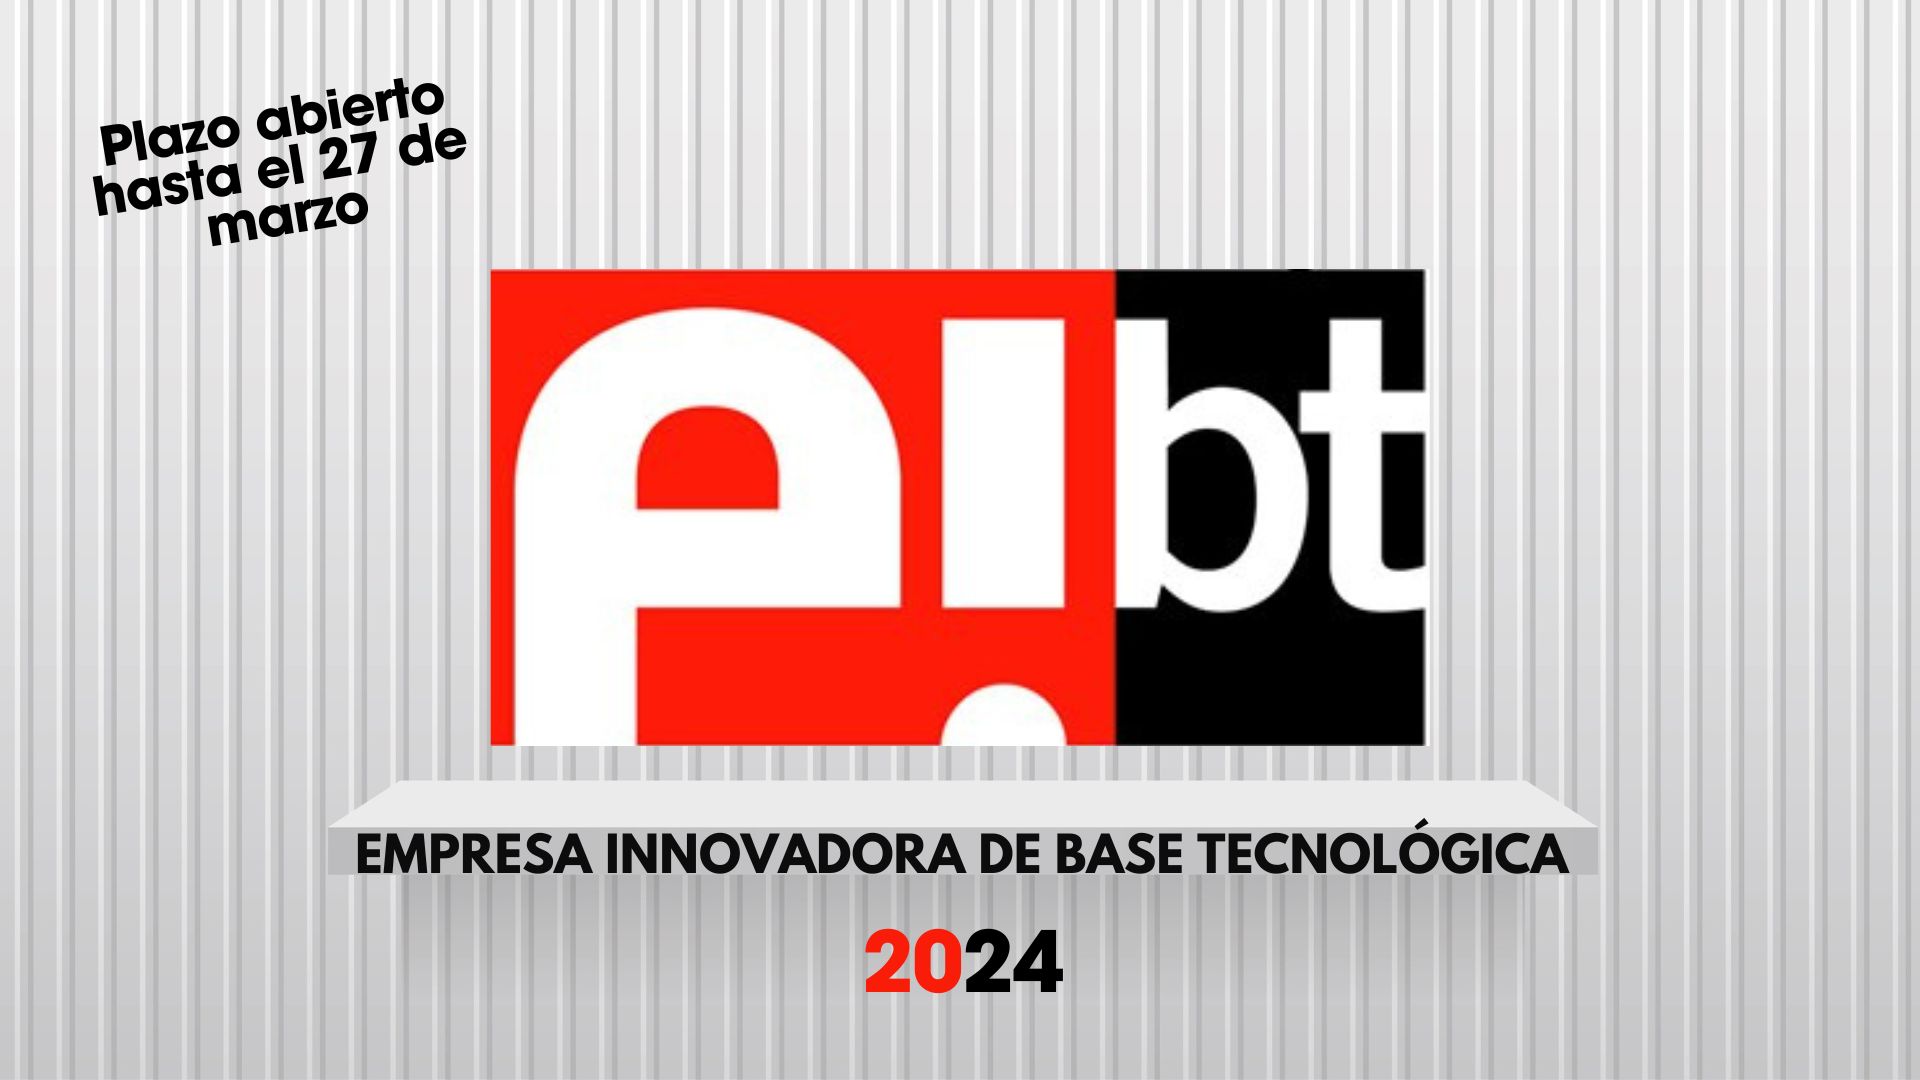 Nueva convocatoria: solicita la Marca EIBT (Empresa Innovadora de Base Tecnológica)